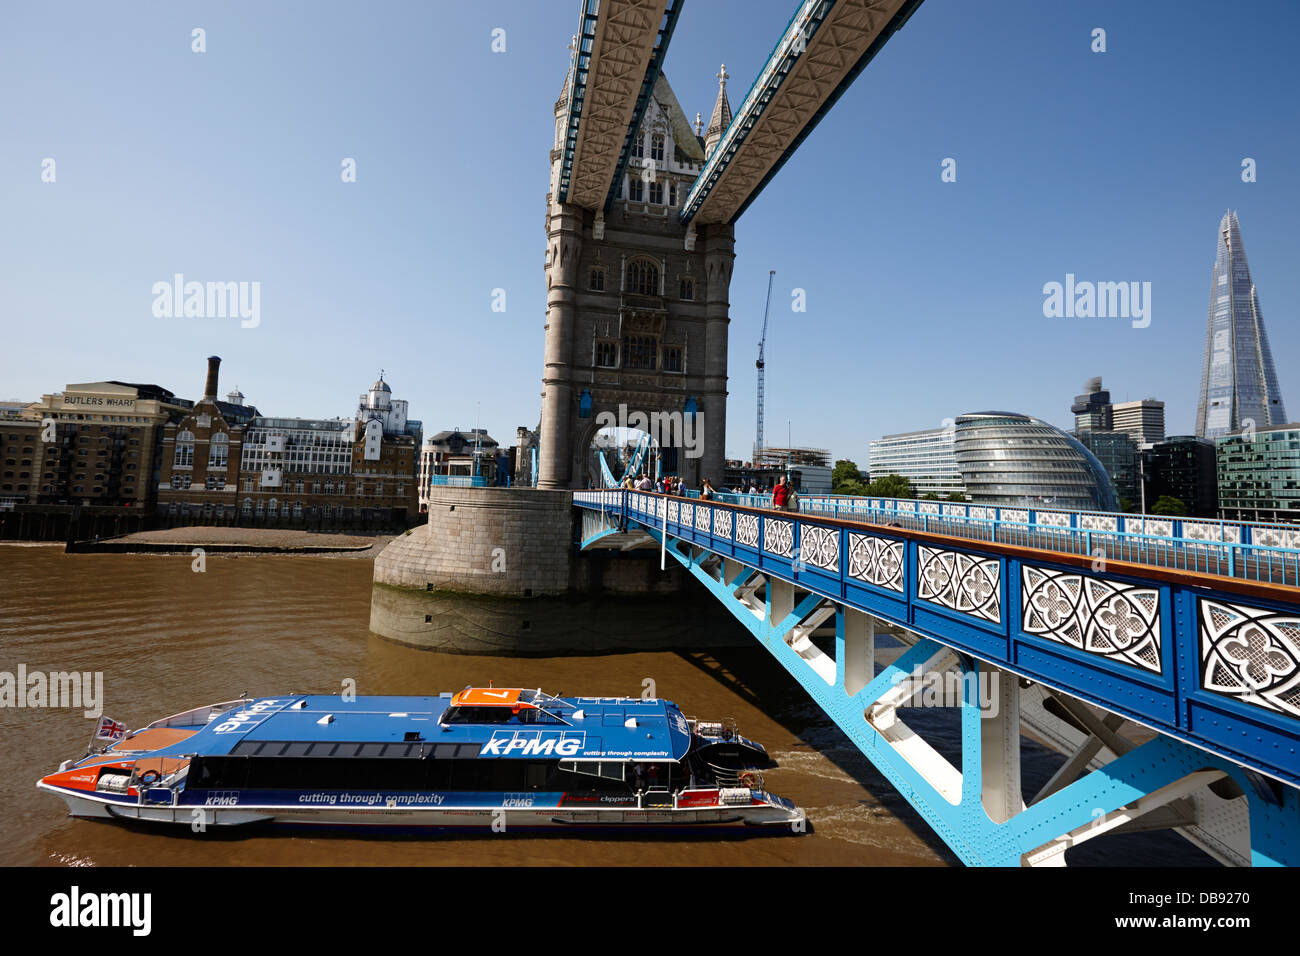 Thames clipper sous Tower bridge sur la tamise Londres Angleterre  Royaume-uni Photo Stock - Alamy